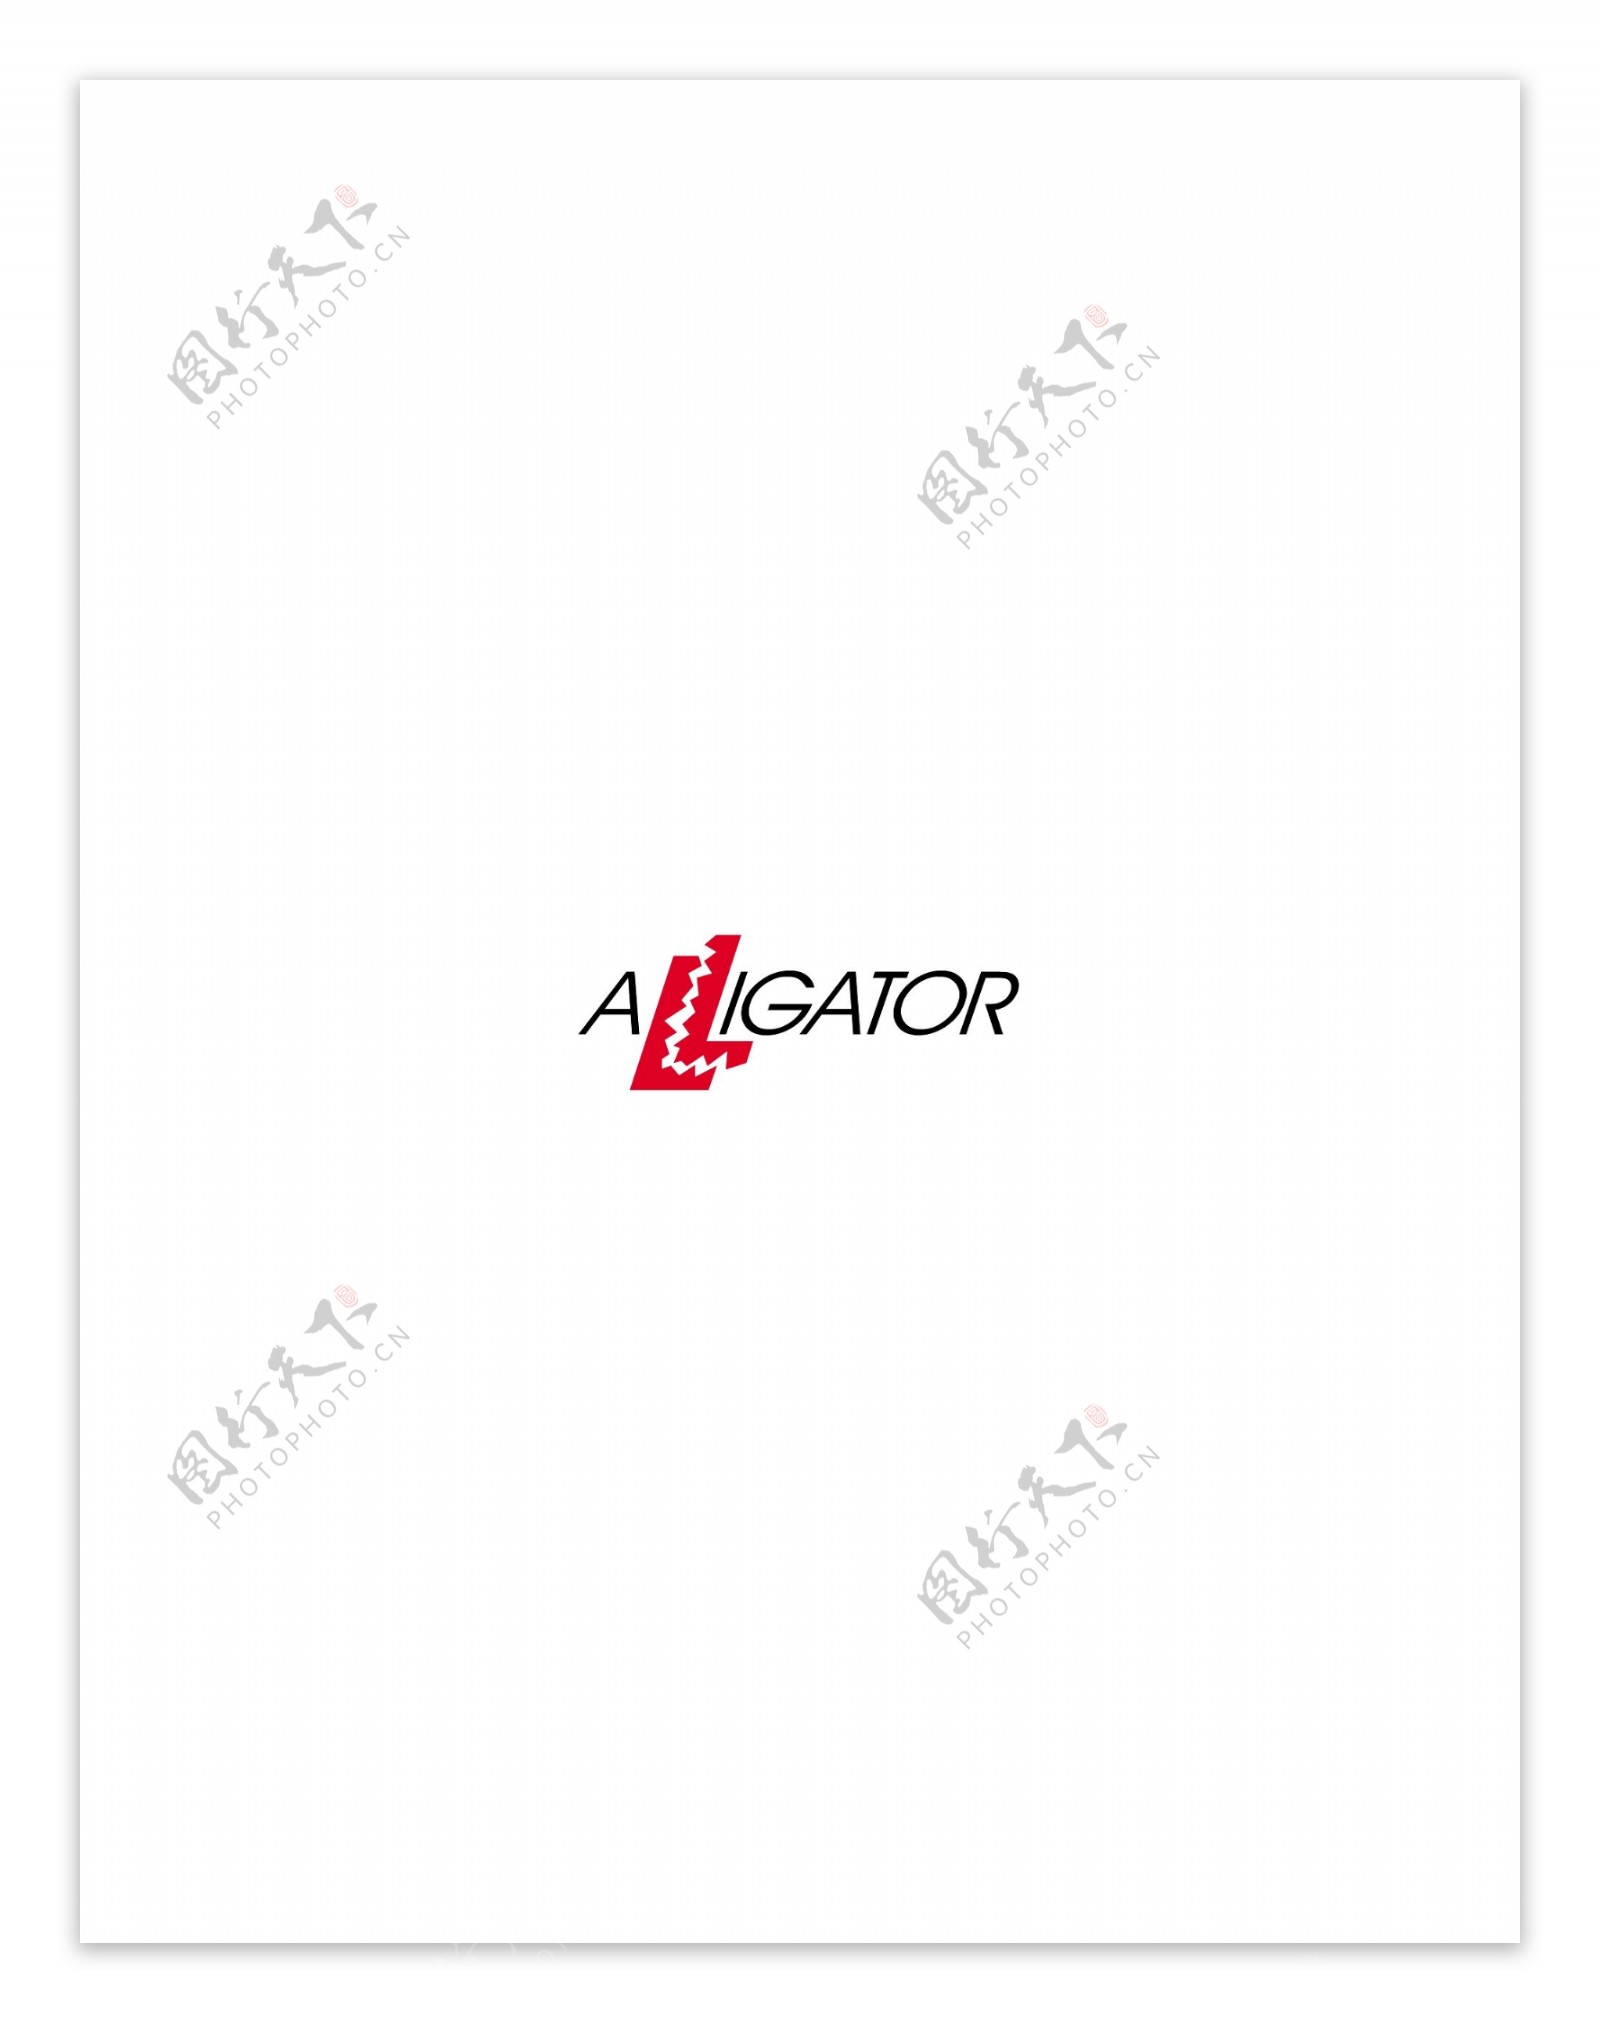 Alligatorlogo设计欣赏软件和硬件公司标志Alligator下载标志设计欣赏